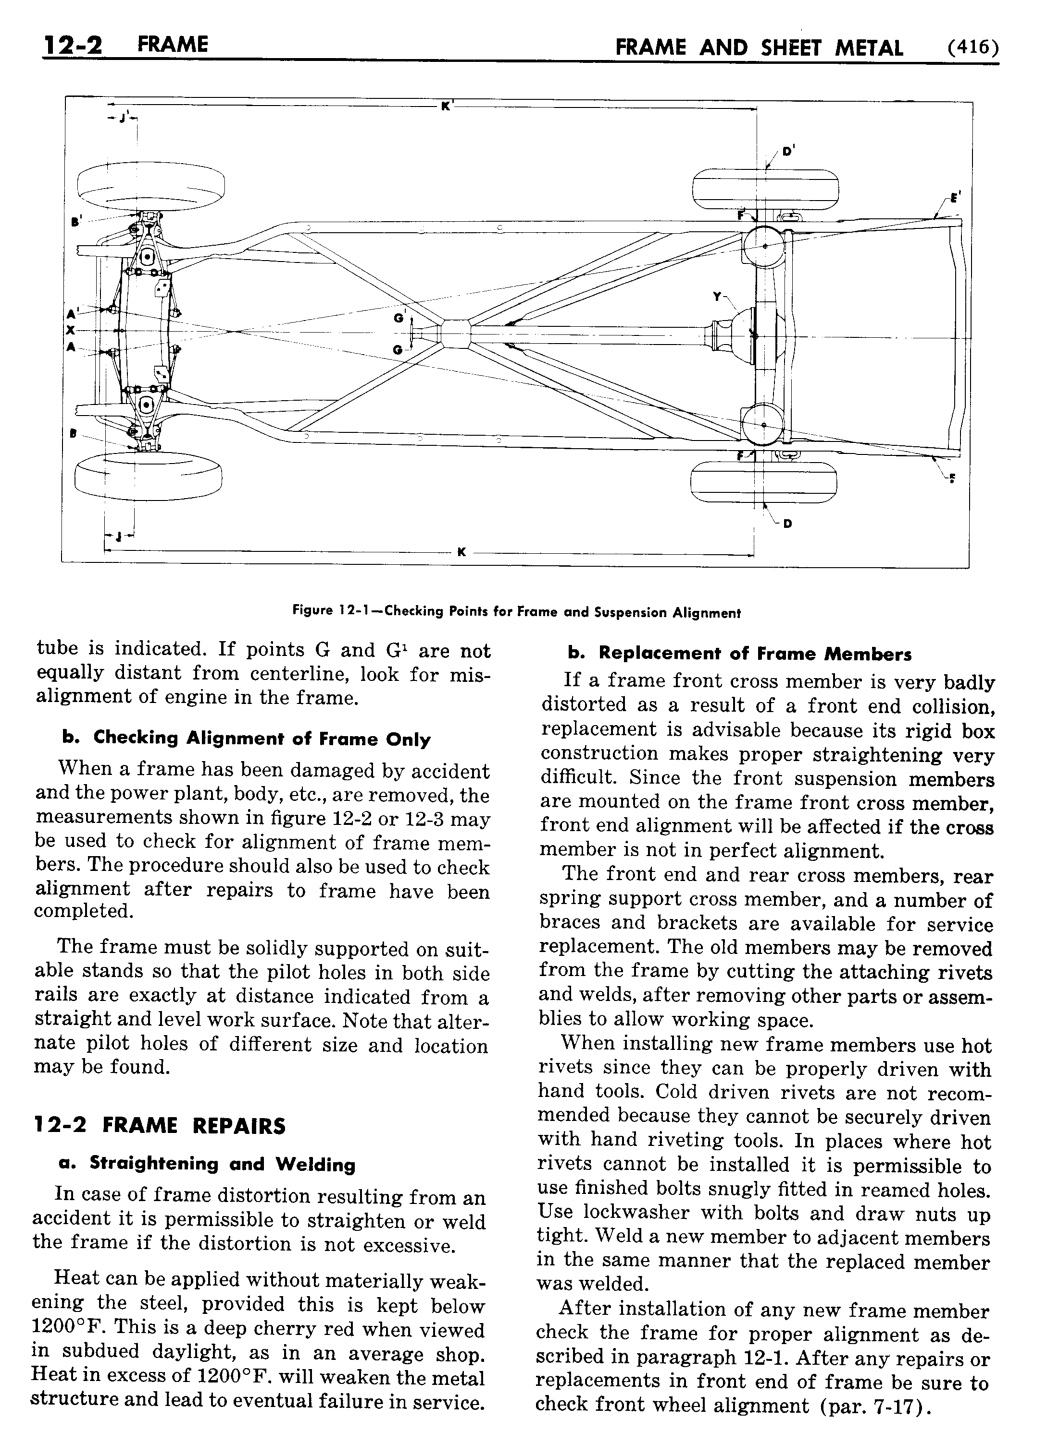 n_13 1955 Buick Shop Manual - Frame & Sheet Metal-002-002.jpg